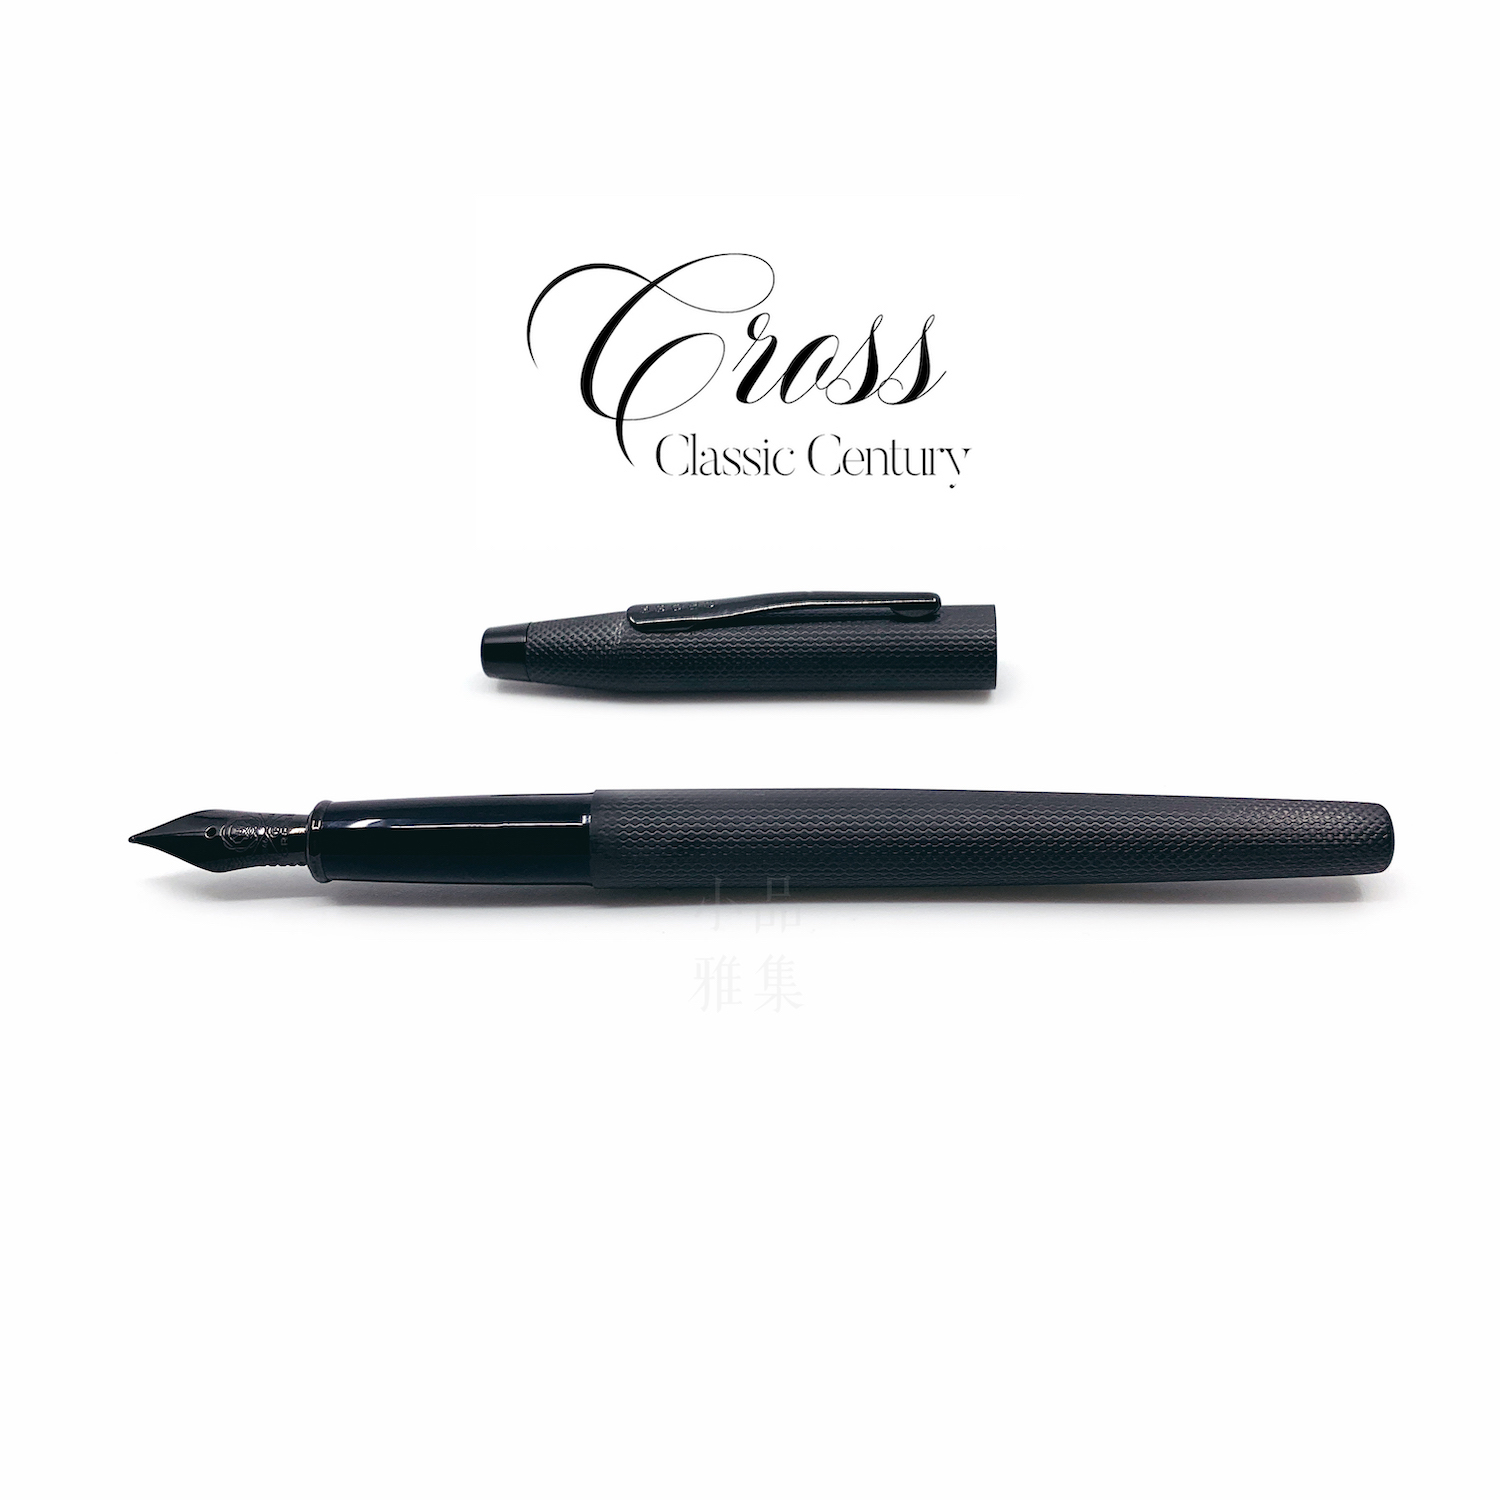 CROSS 高仕Classic Century 新經典世紀鋼筆（啞黑）